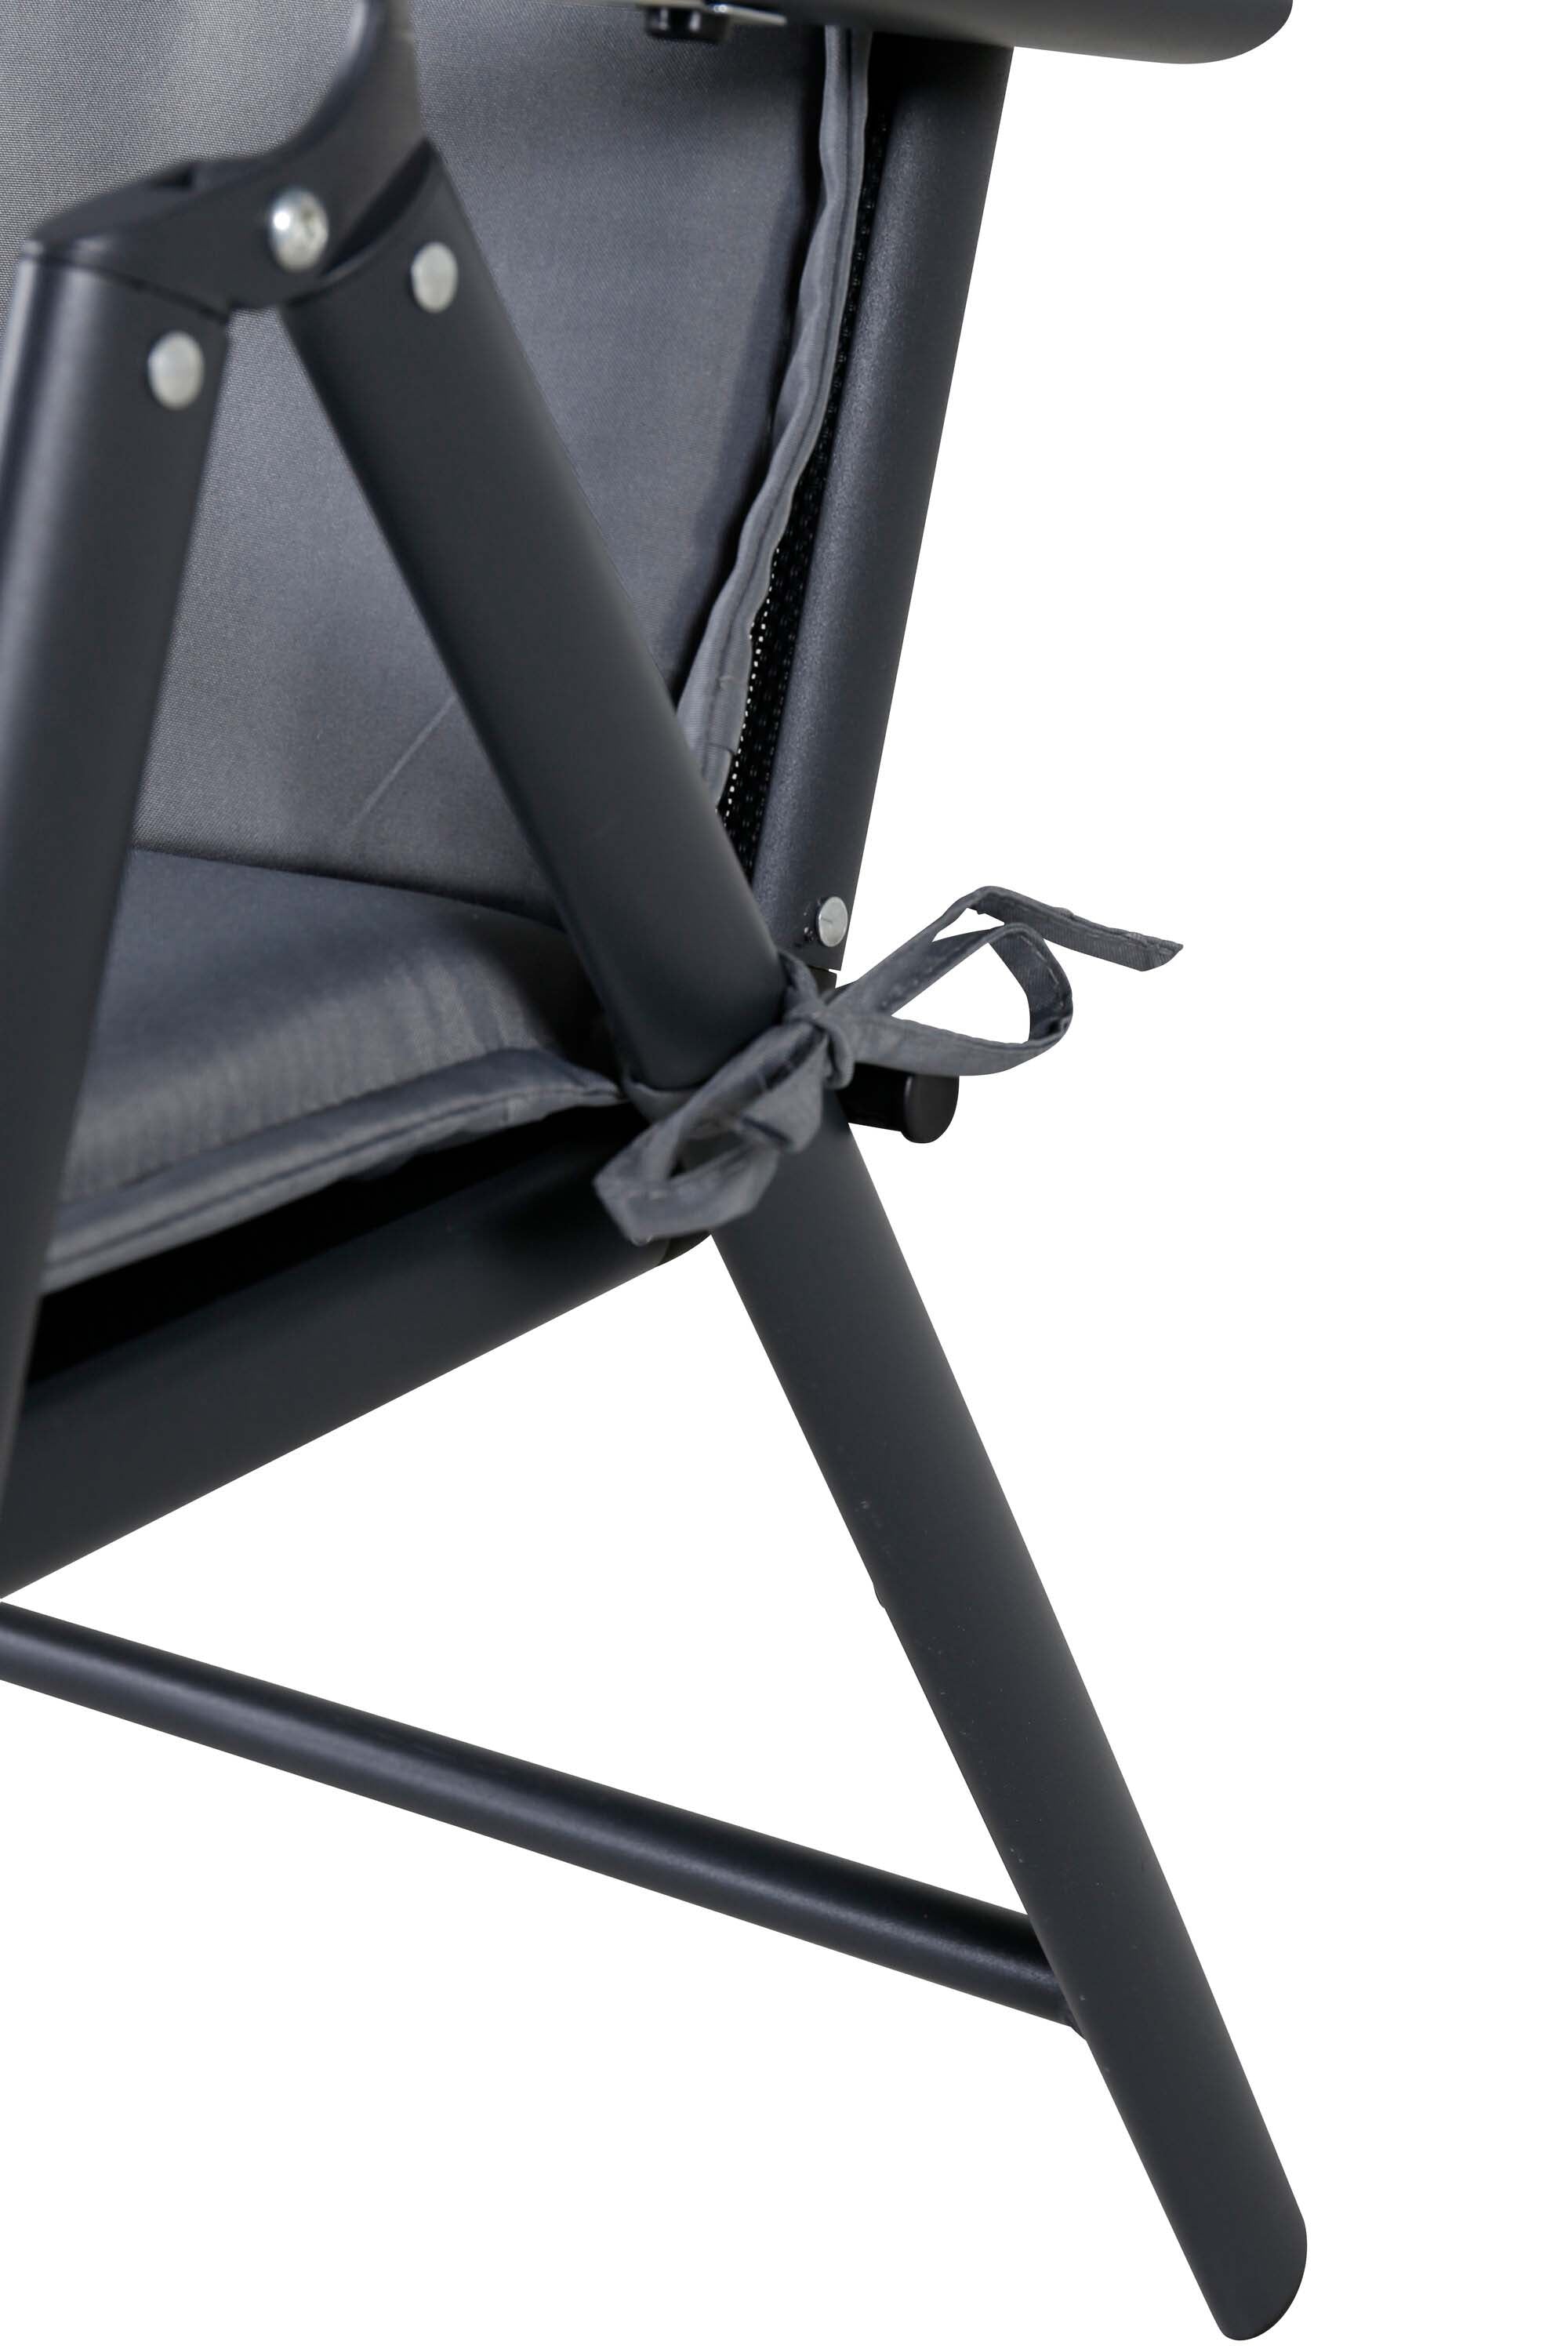 Kissen 5 pos in Grau präsentiert im Onlineshop von KAQTU Design AG. Sitzkissen ist von Venture Home